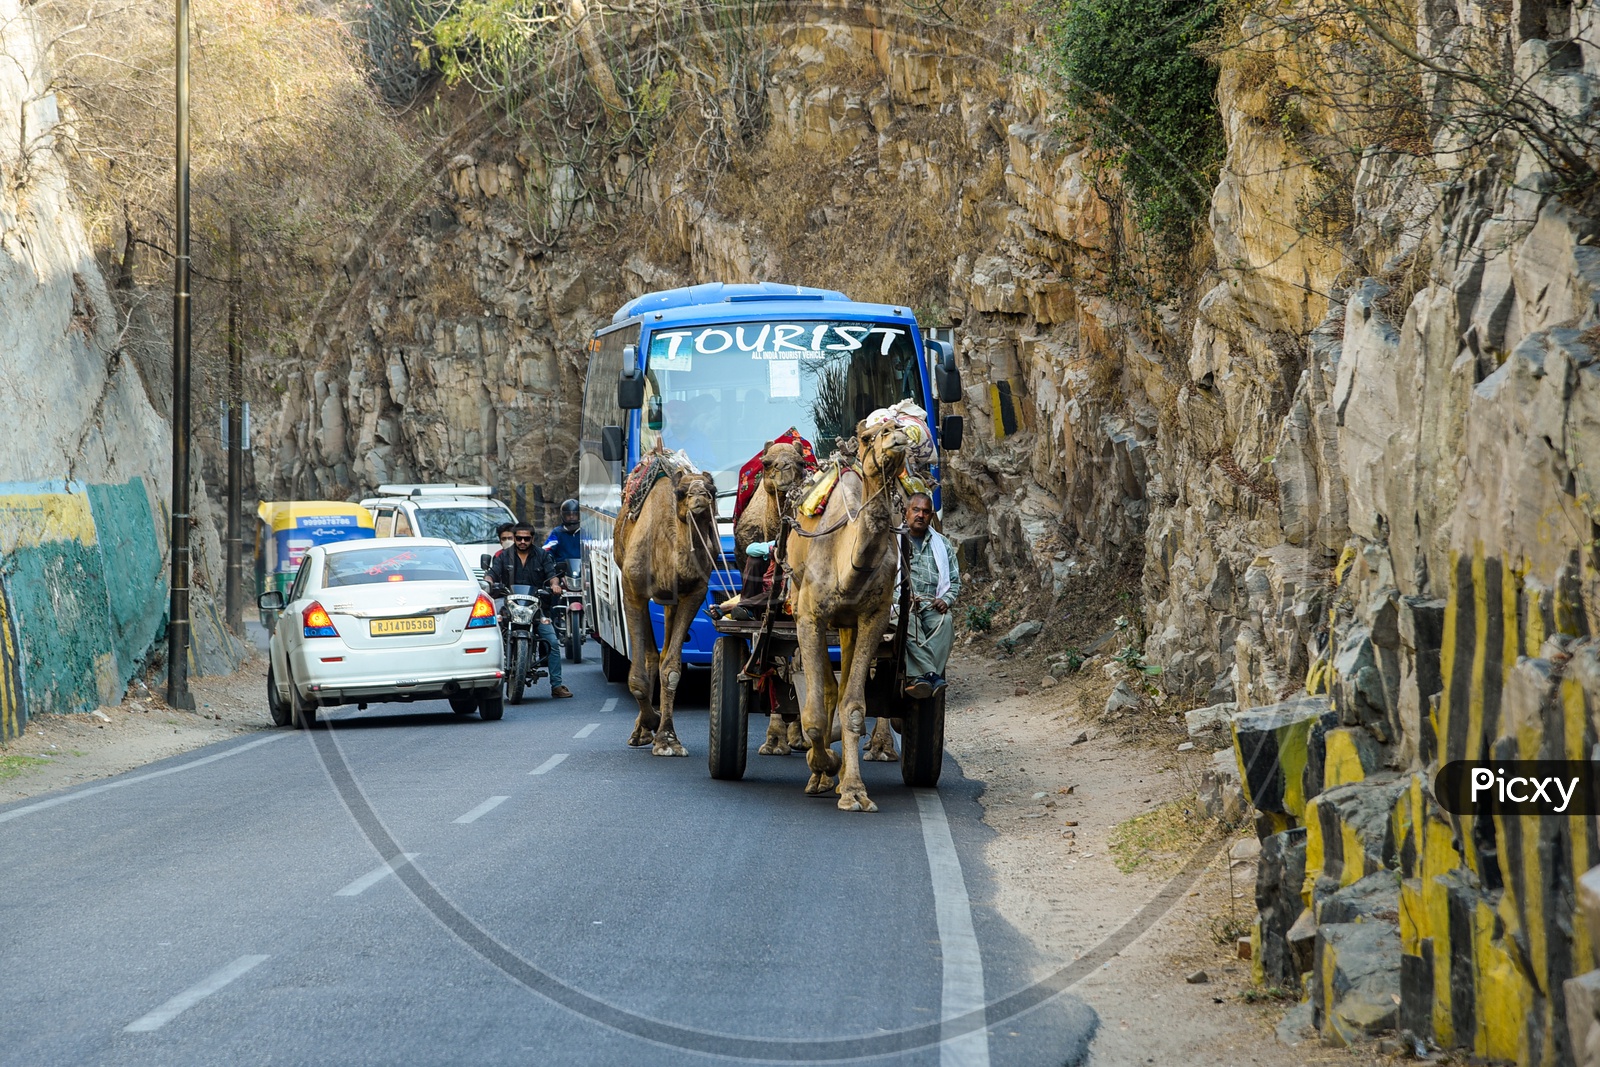 Camel Caravan near Amer Fort, Jaipur